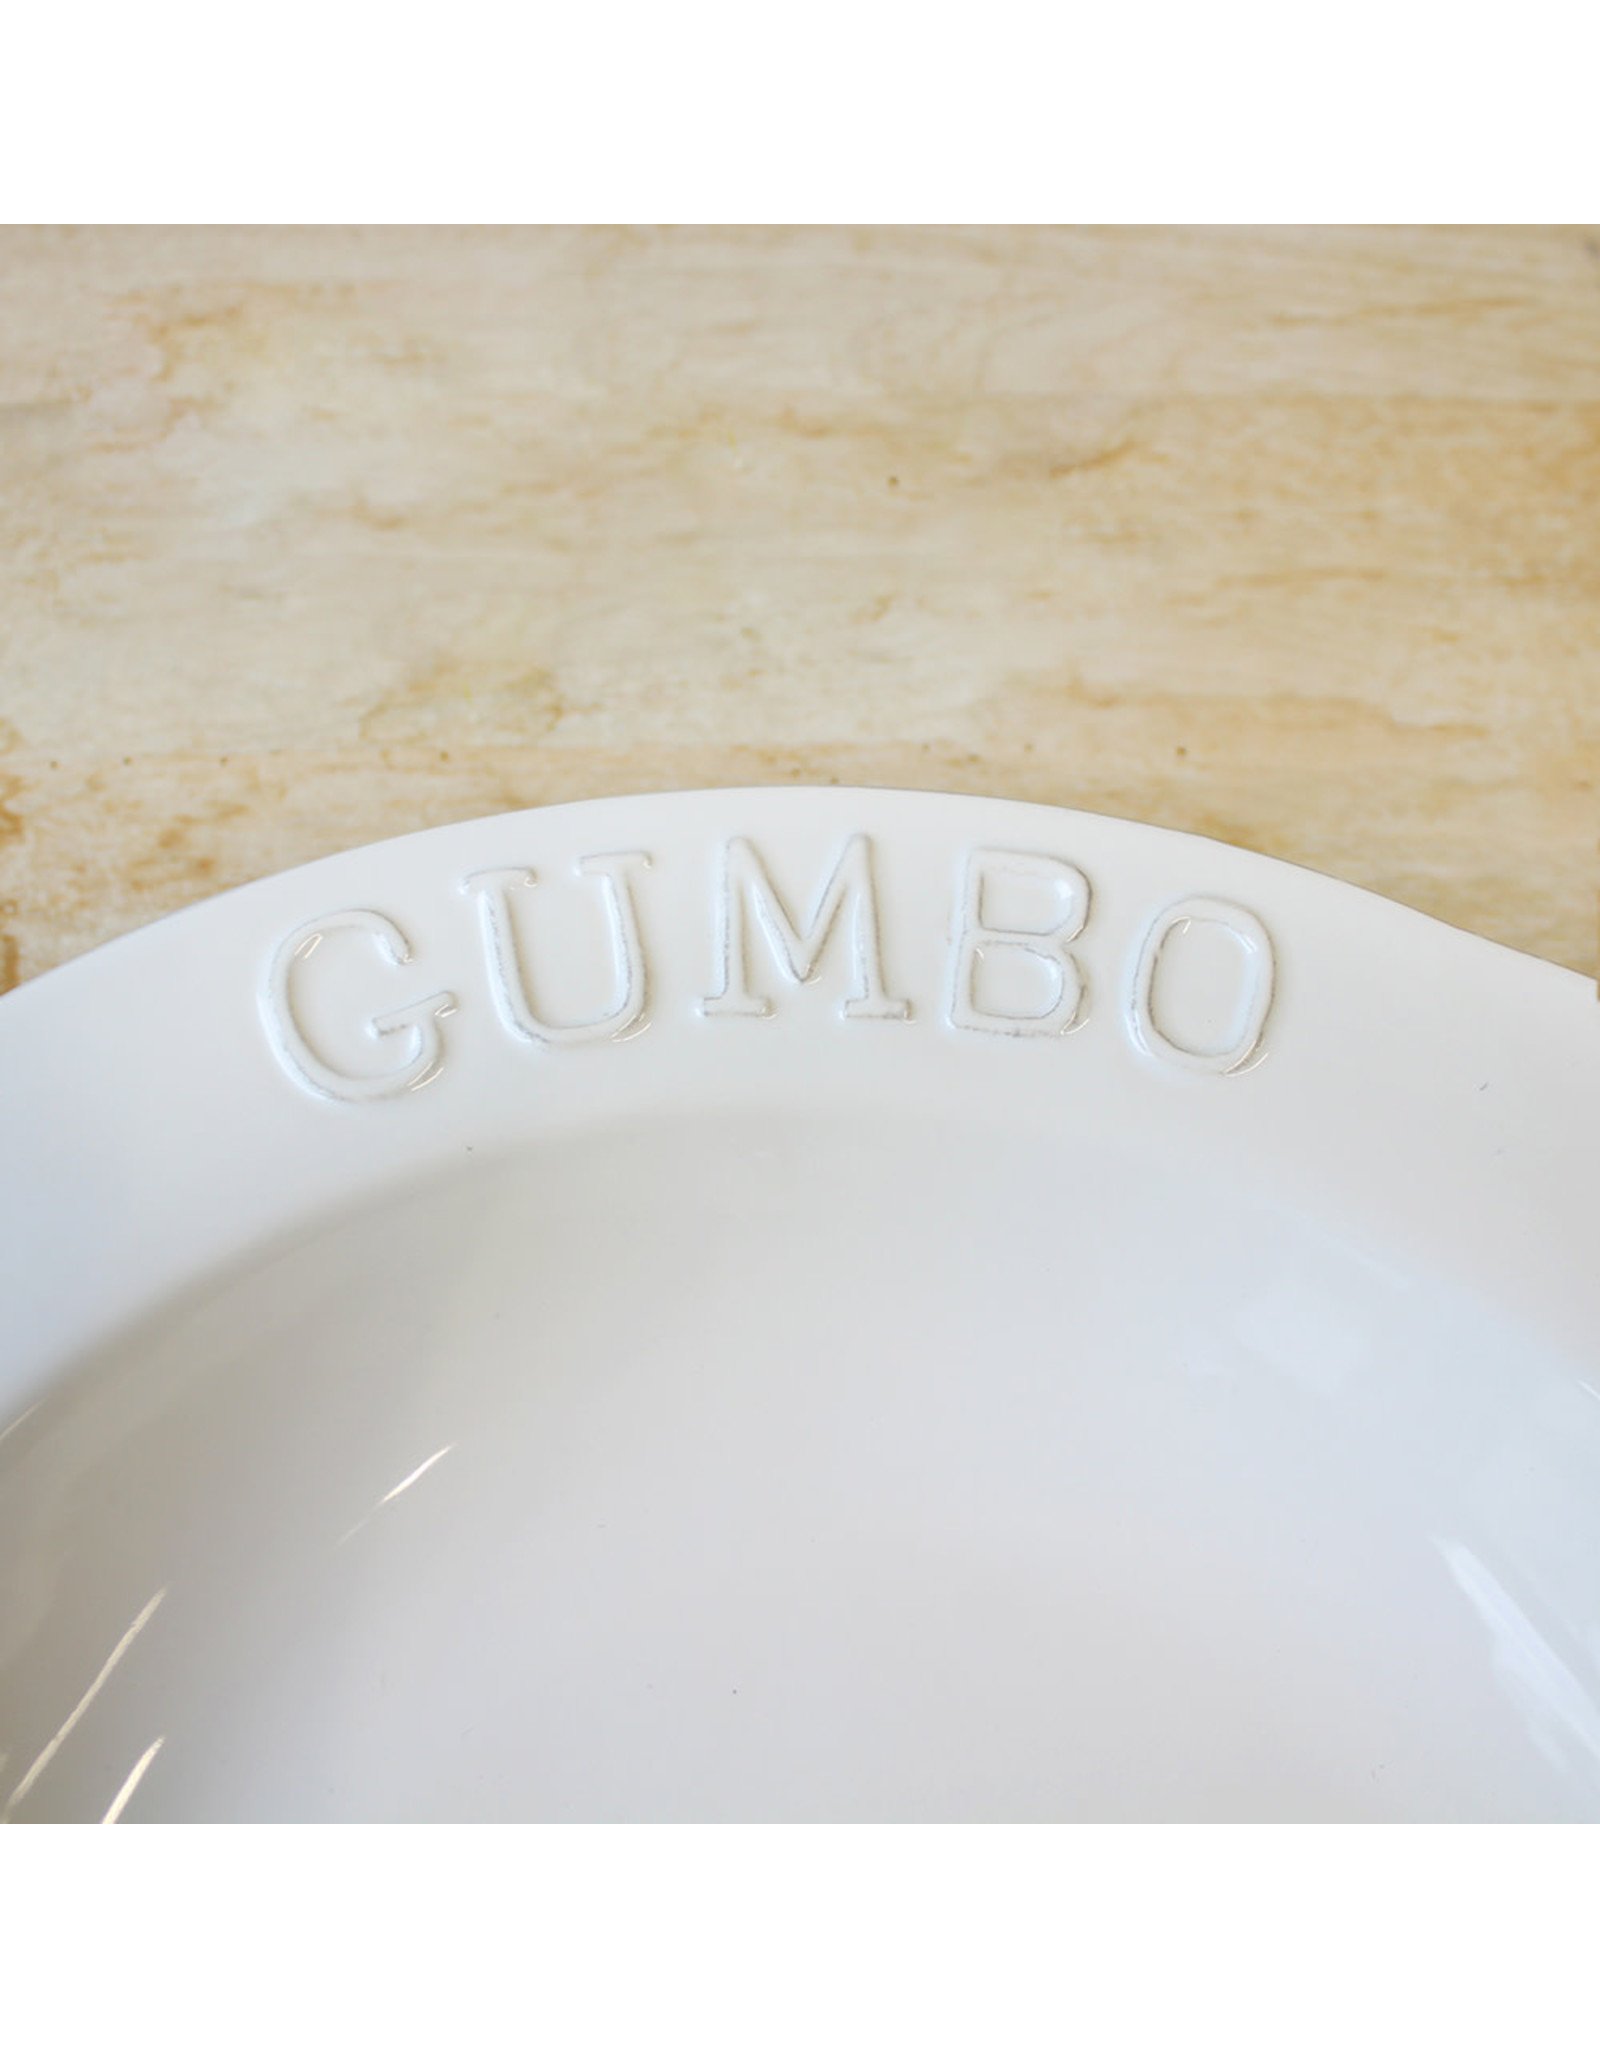 The Royal Standard Gumbo Bowl